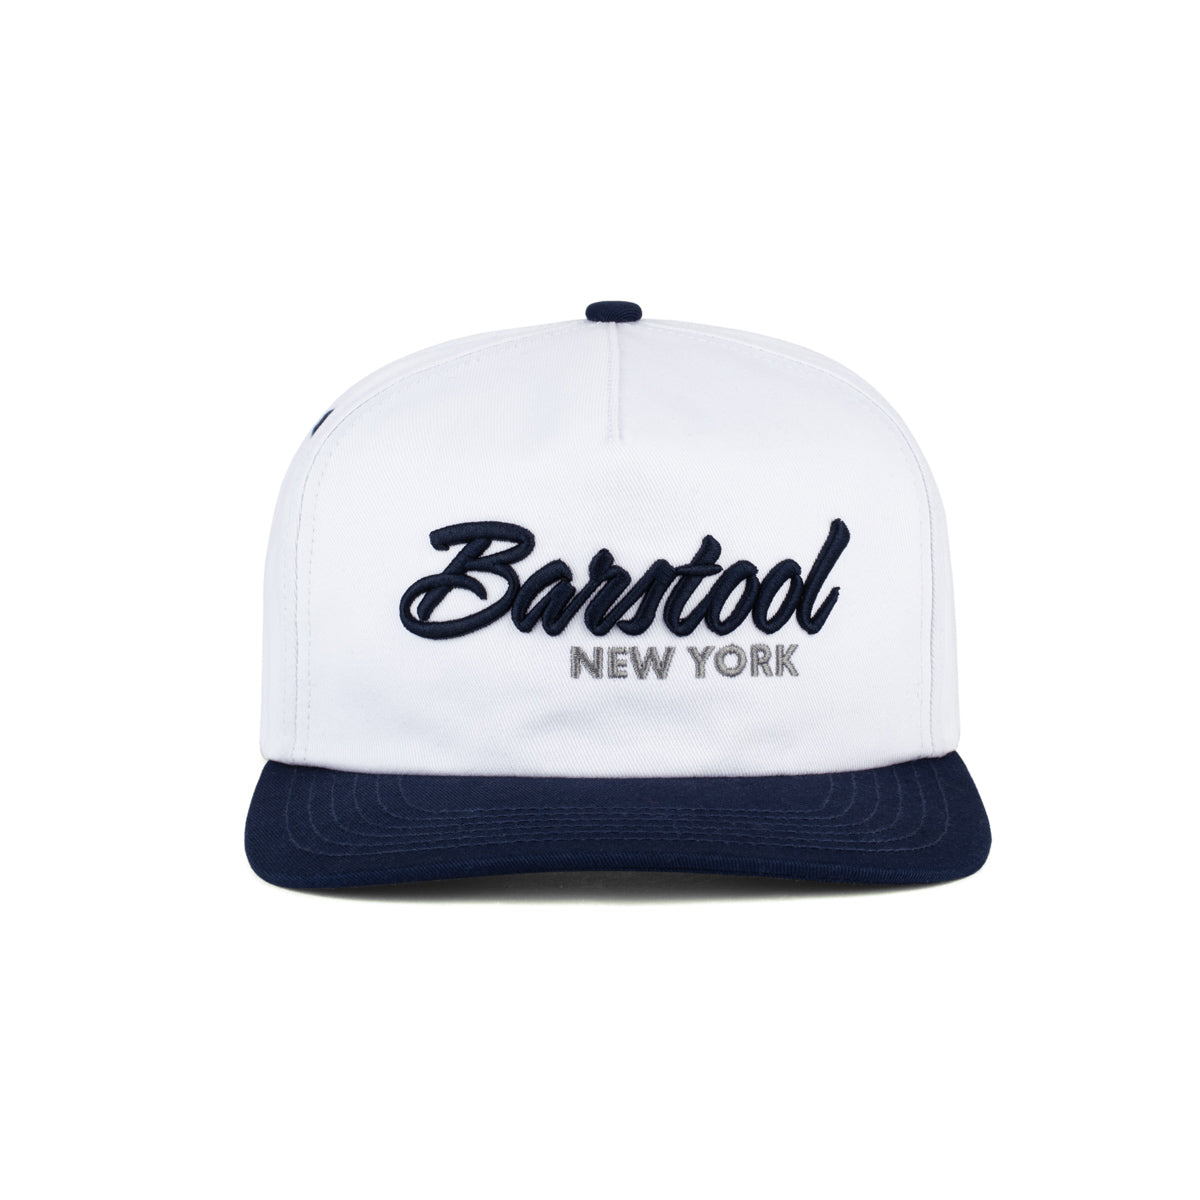 Barstool NY Retro Snapback Hat-Hats-Barstool Sports-White-One Size-Barstool Sports